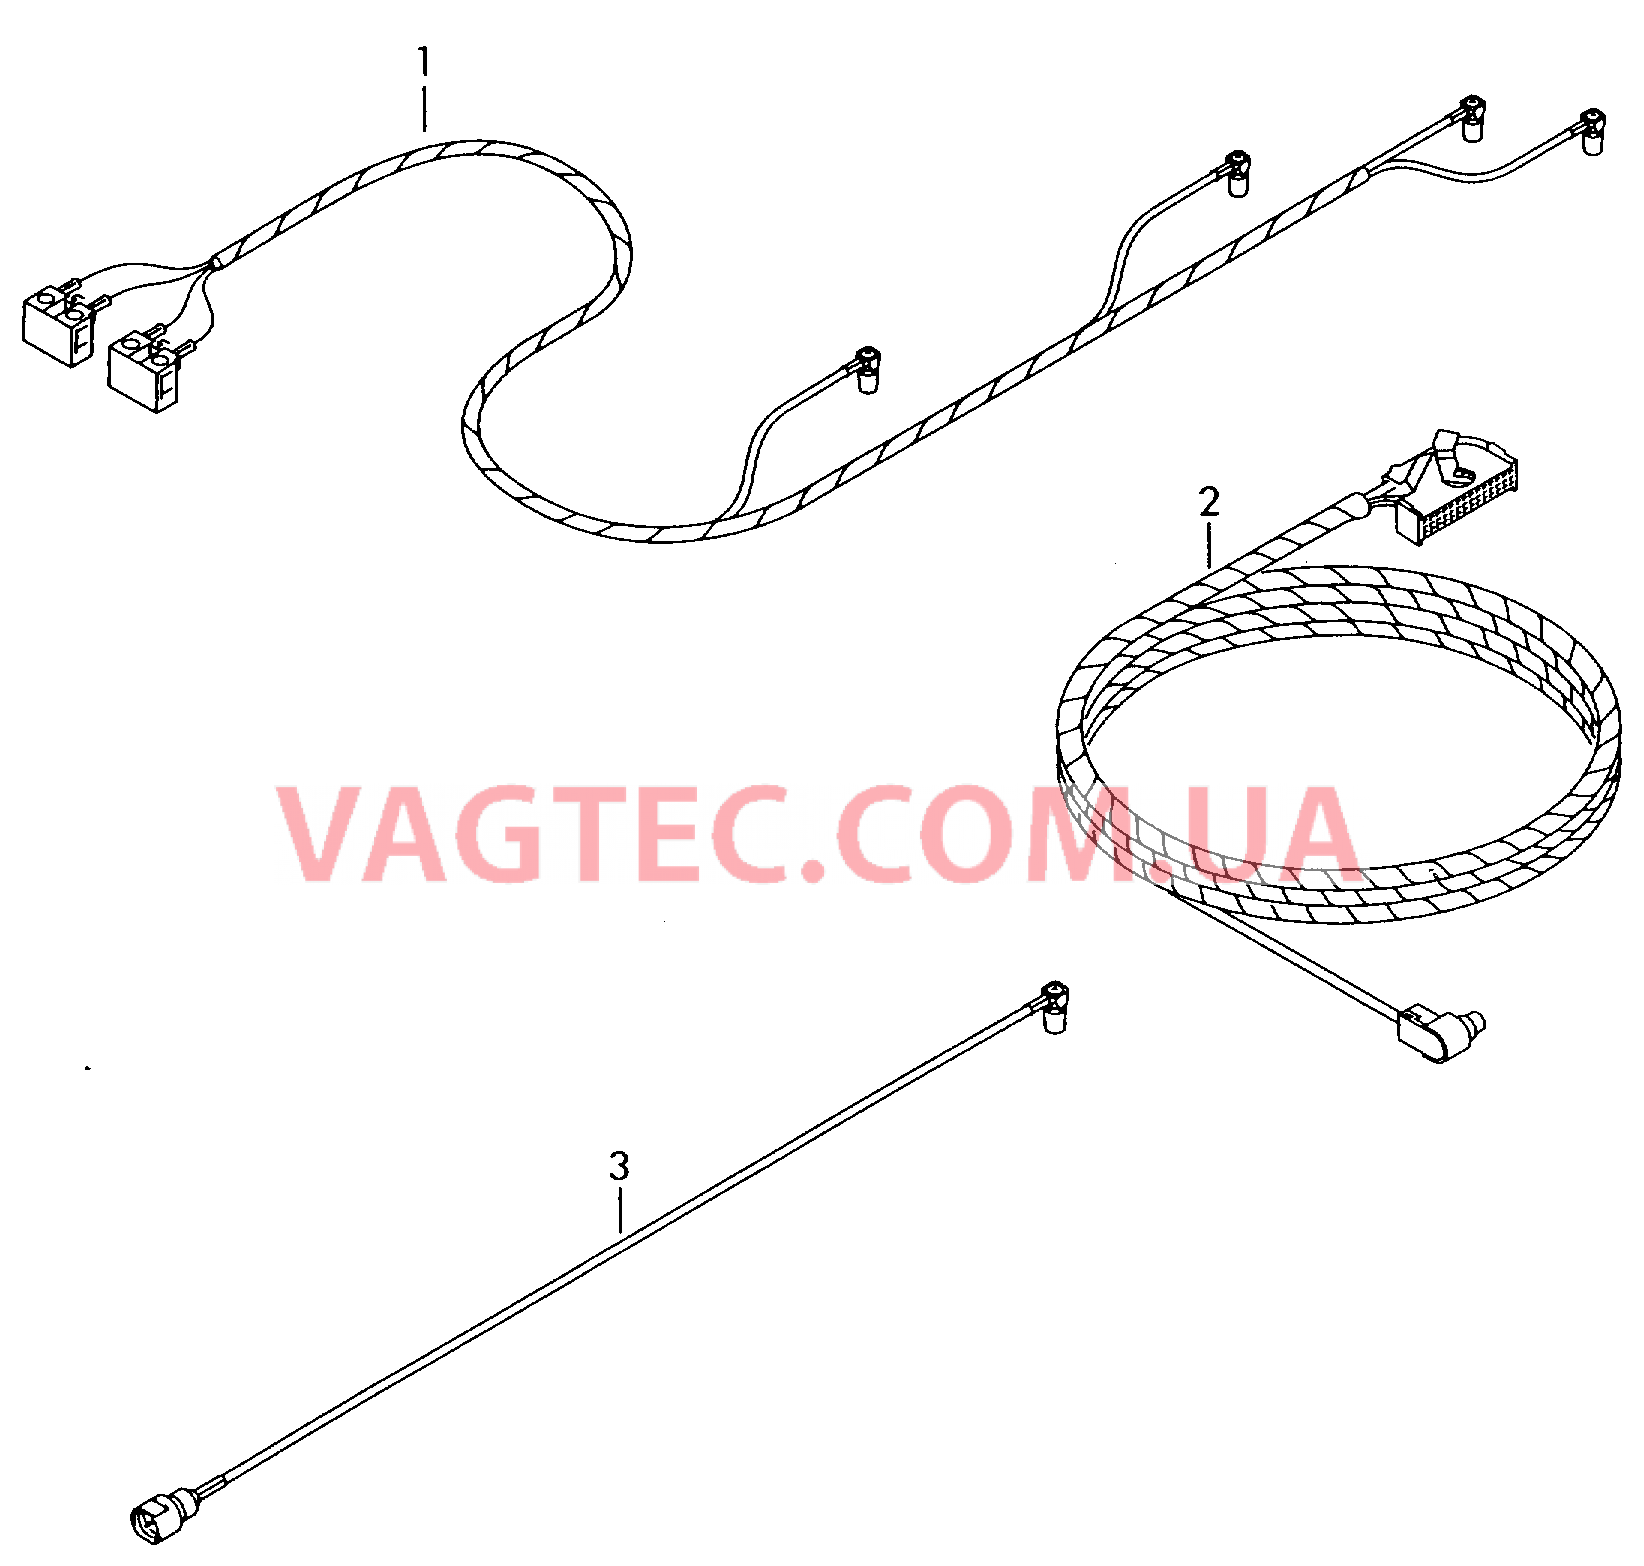 Жгут проводов системы навигации  Антенный кабель Жгут проводов для а/м с комплектом для подключения телефона         также см. иллюстрацию:  для VOLKSWAGEN Passat 2001